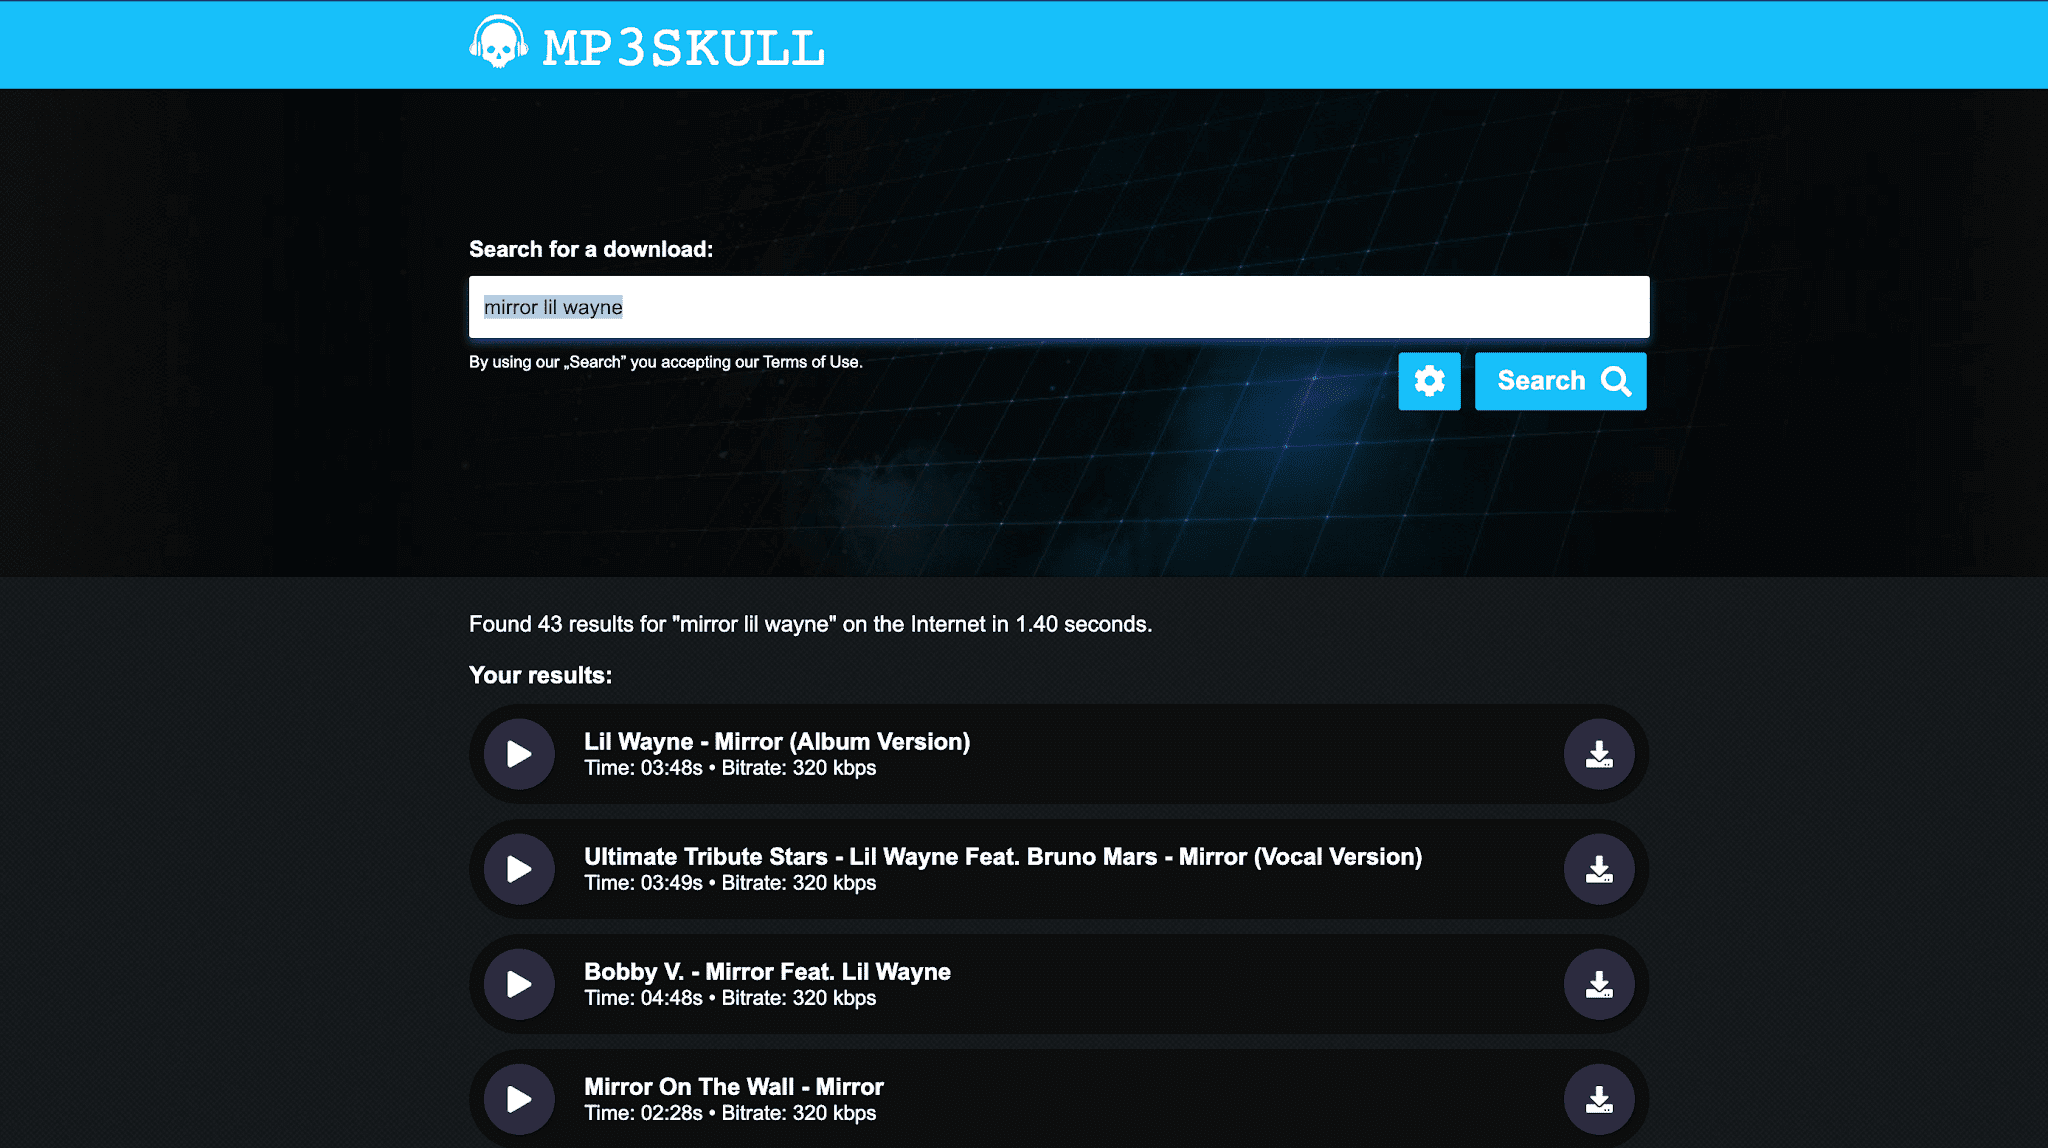 mp3 skulls music download.com